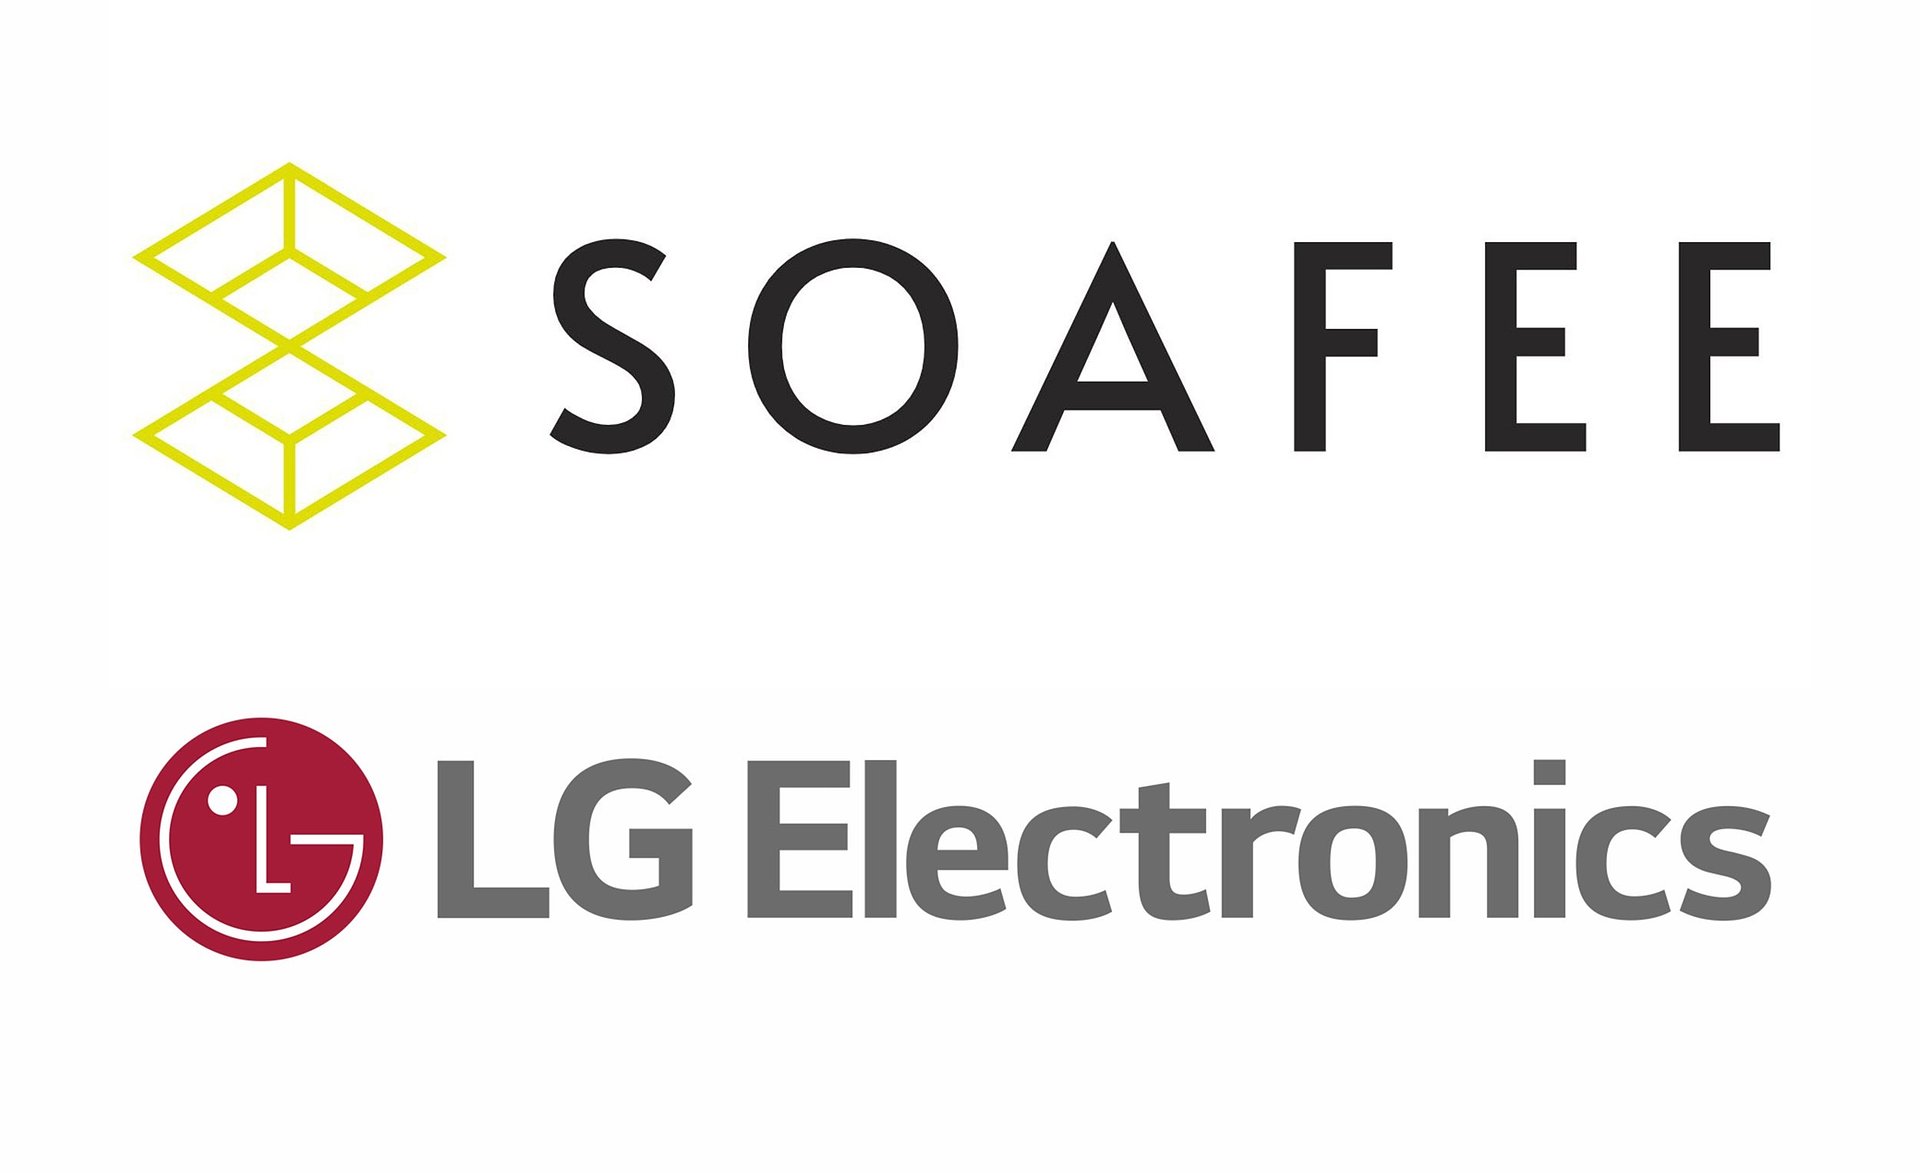 LG dołącza do zarządu konsorcjum branżowego opracowującego pionierskie technologie przyszłej mobilności